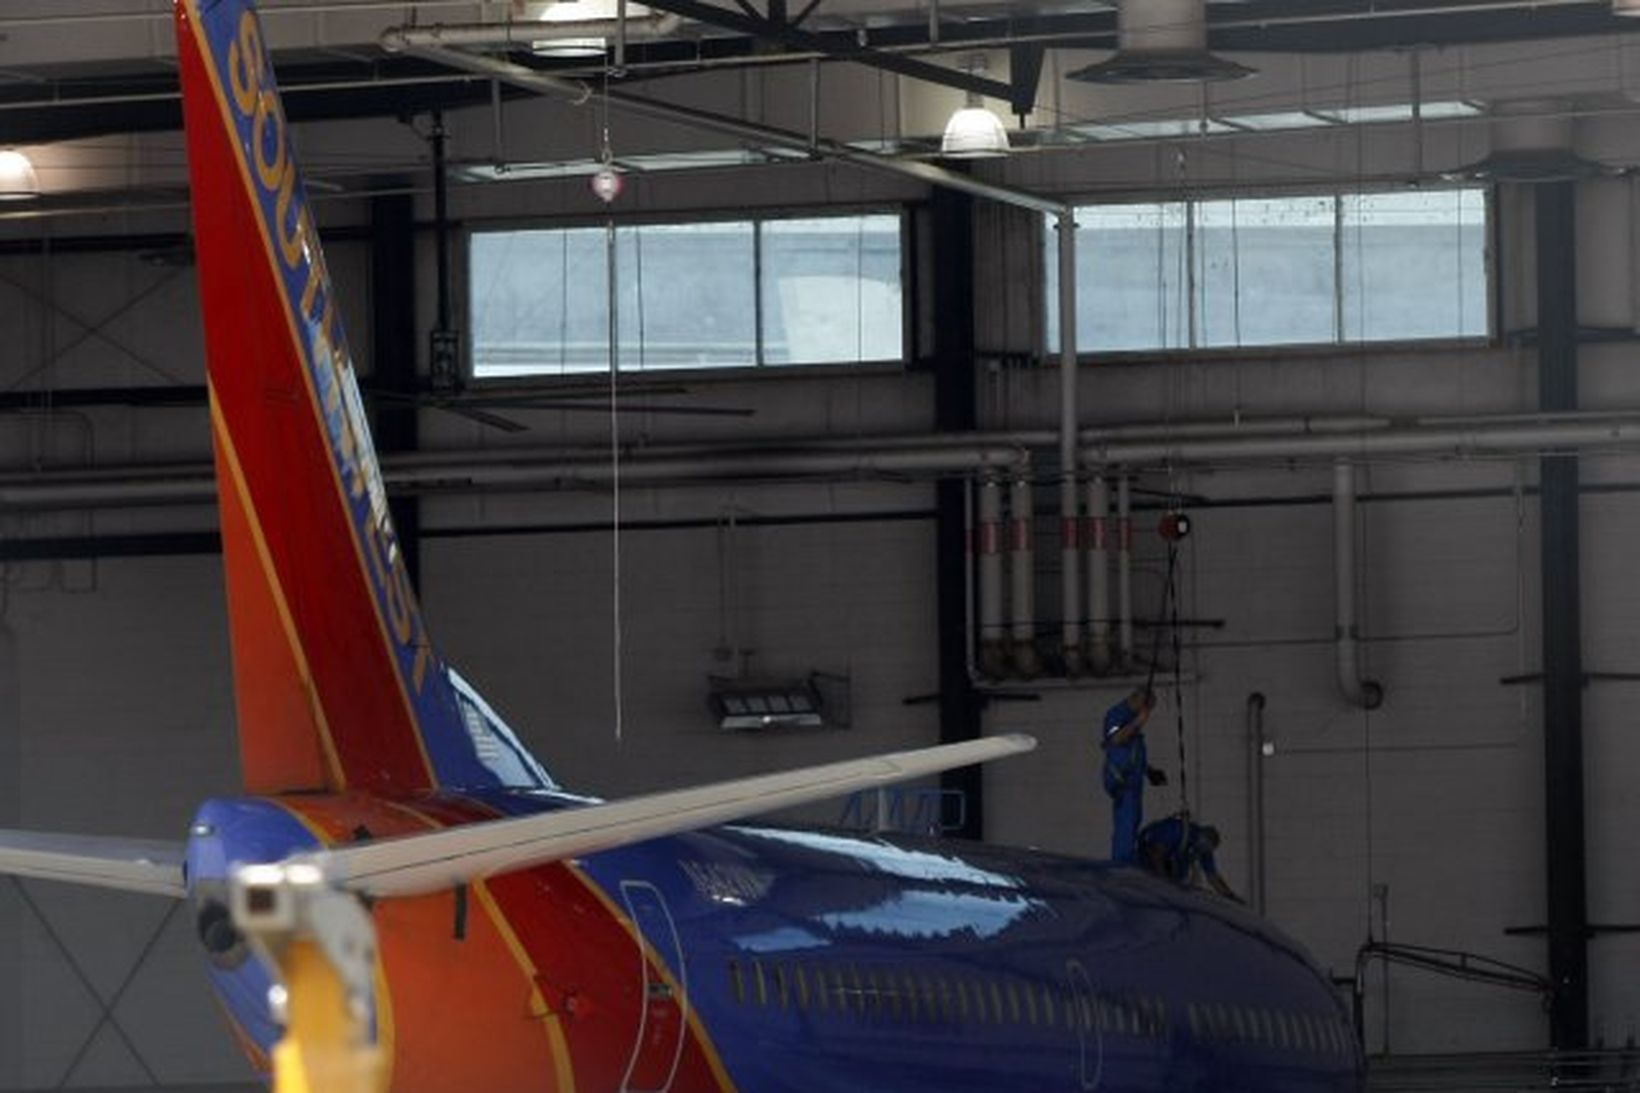 Flugvélavirkjar Southwest Airlines skoða Boeing 737 í flugskýli á alþjóðaflugvellinum …